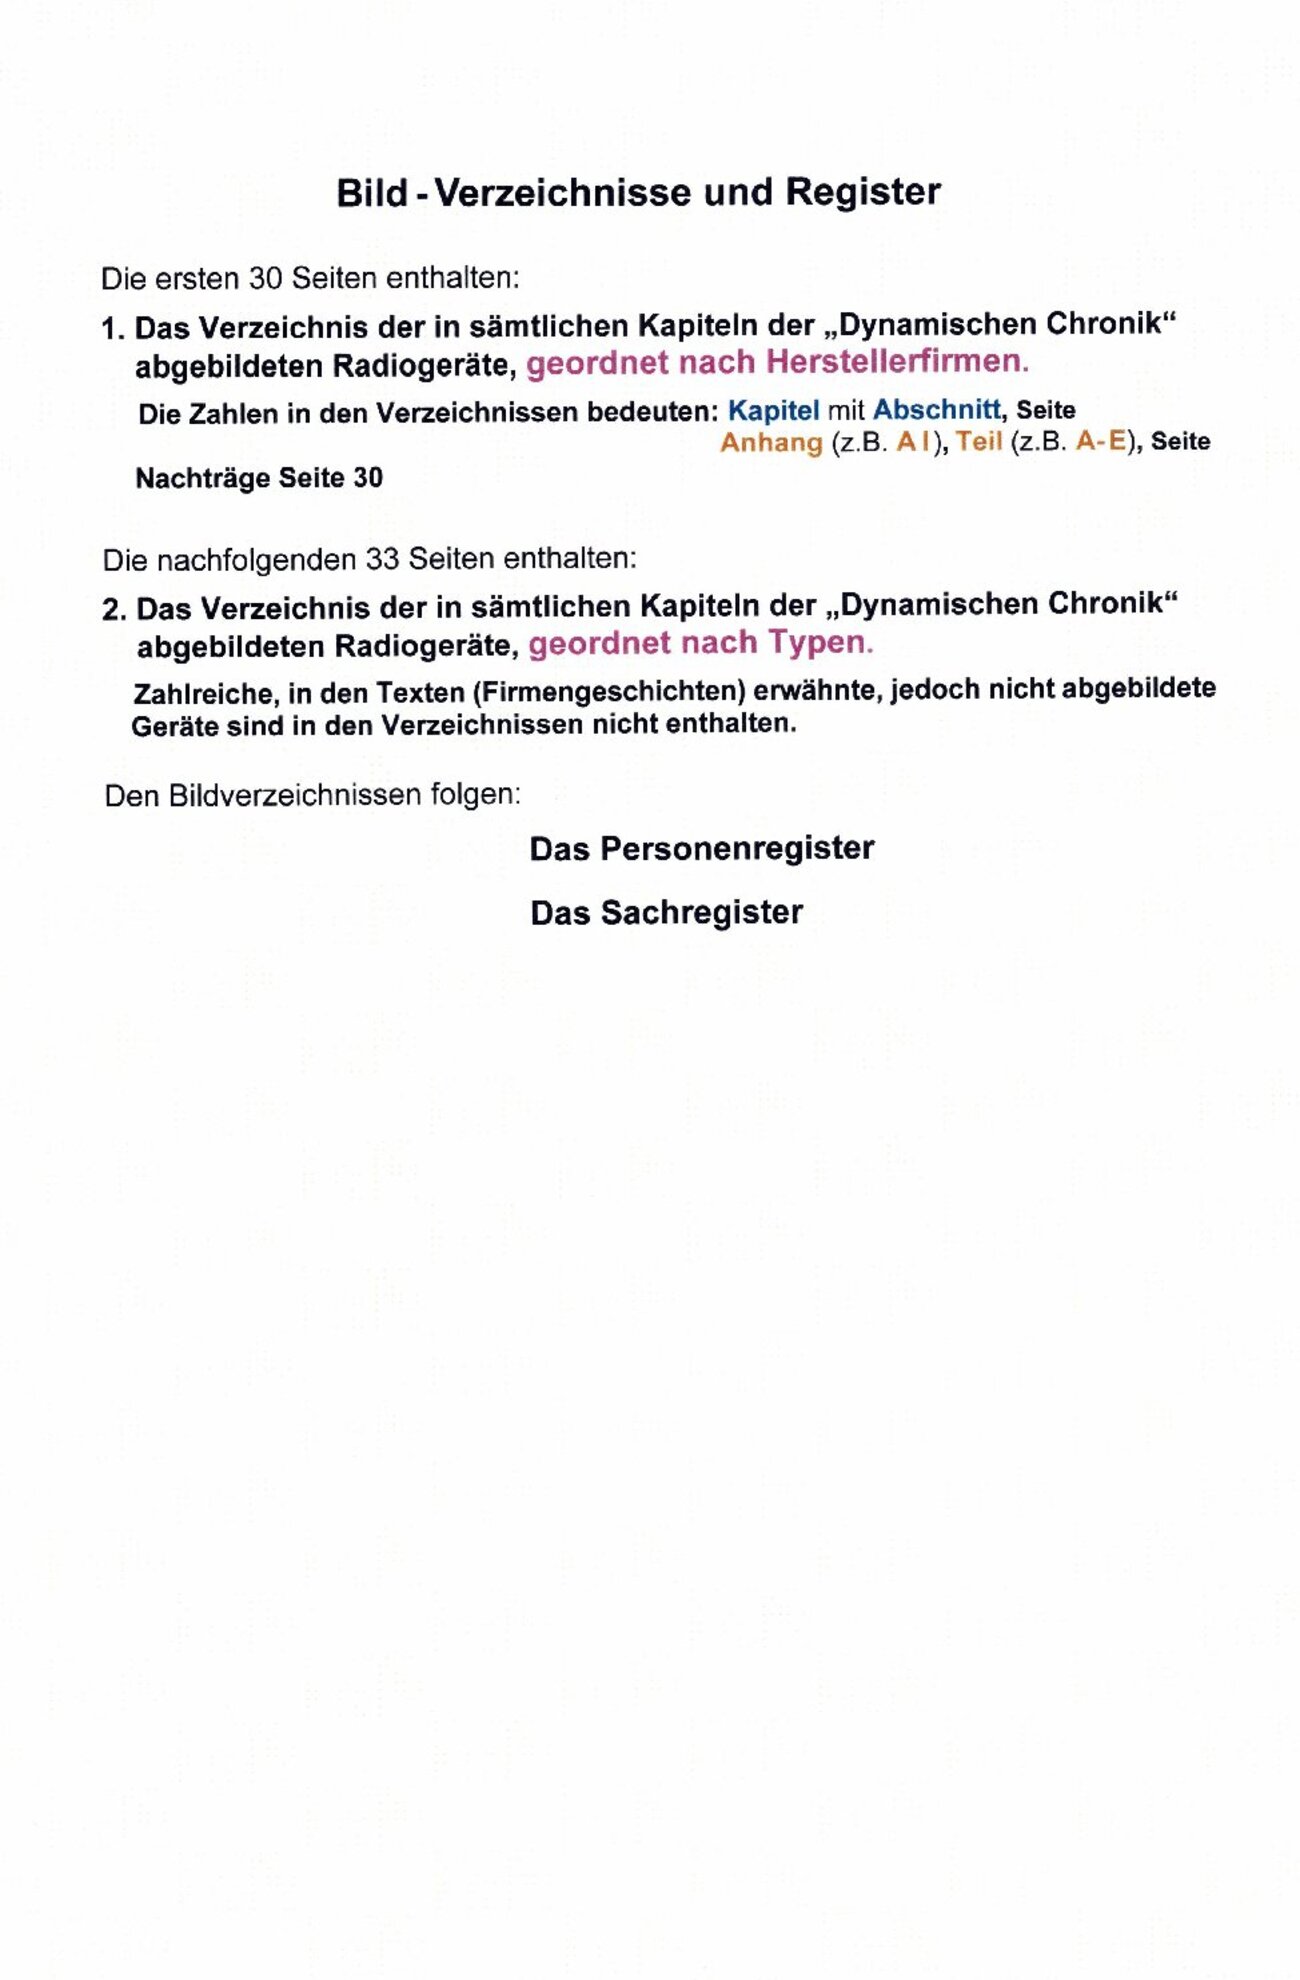 Anhang_B_IV_Deutsche_Radioröhren_Typbezeichnungen_nach_1945_removed_cropped_00015.jpg